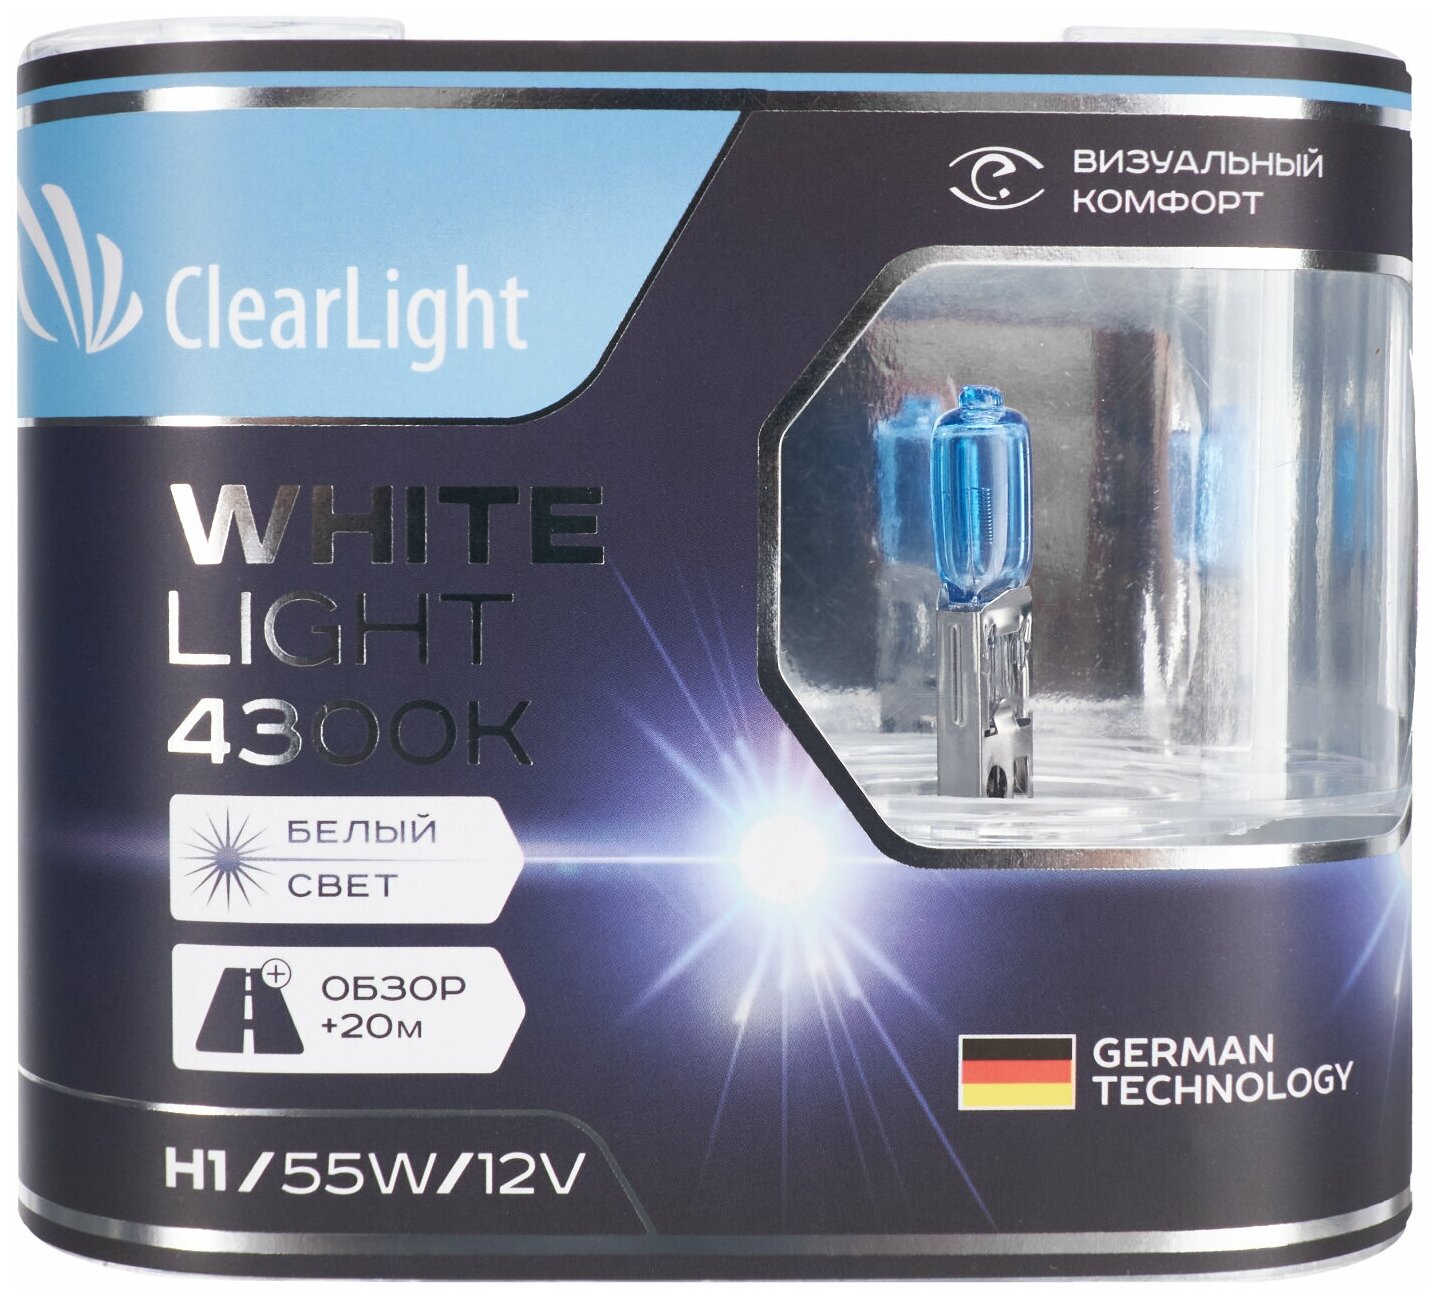 Комплект ламп Clearlight - фото №6